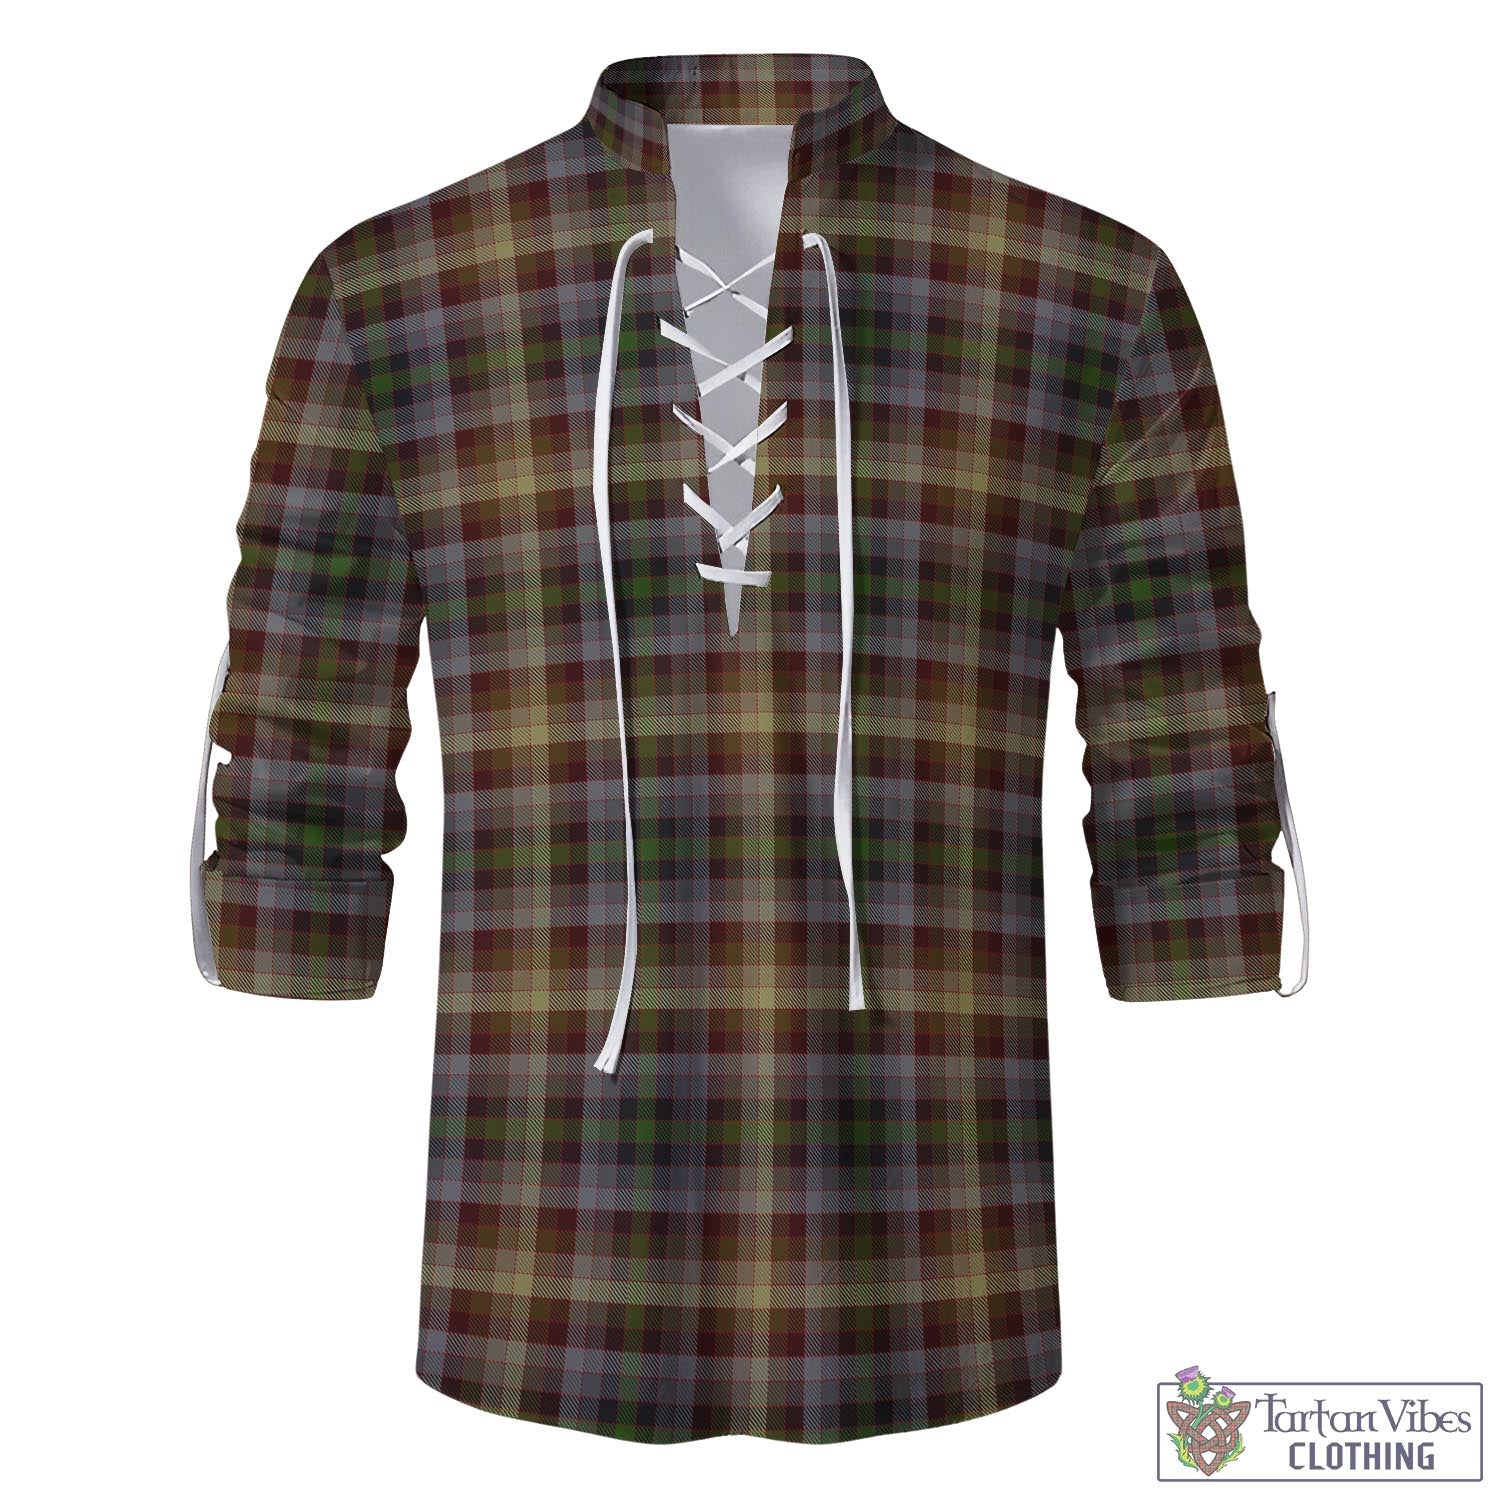 Tartan Vibes Clothing MacKay of Strathnaver Tartan Men's Scottish Traditional Jacobite Ghillie Kilt Shirt